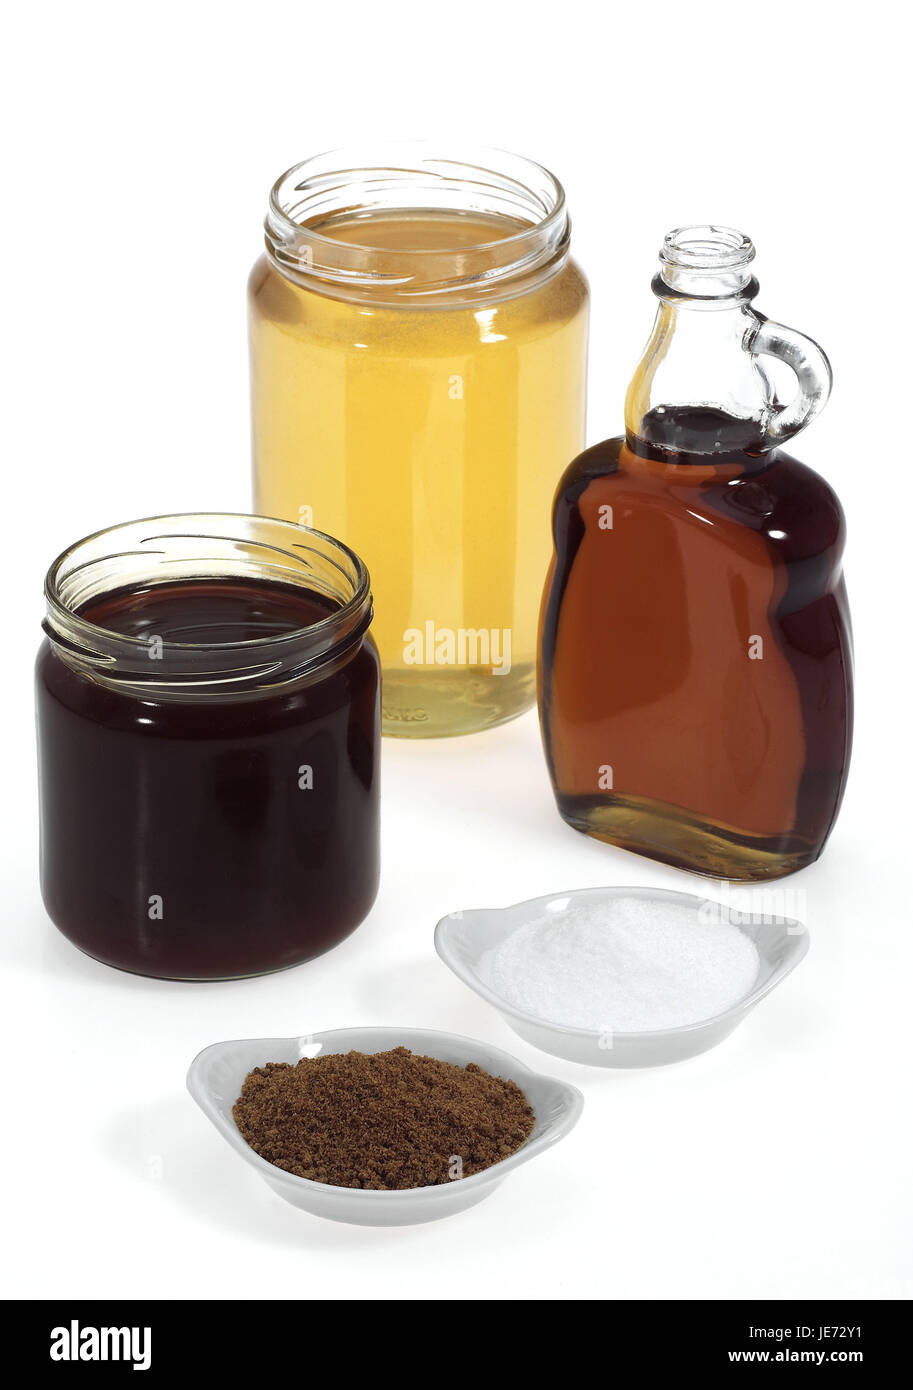 Cristaux de sucre, sucre brun, sirop d'érable, miel, navet, Banque D'Images